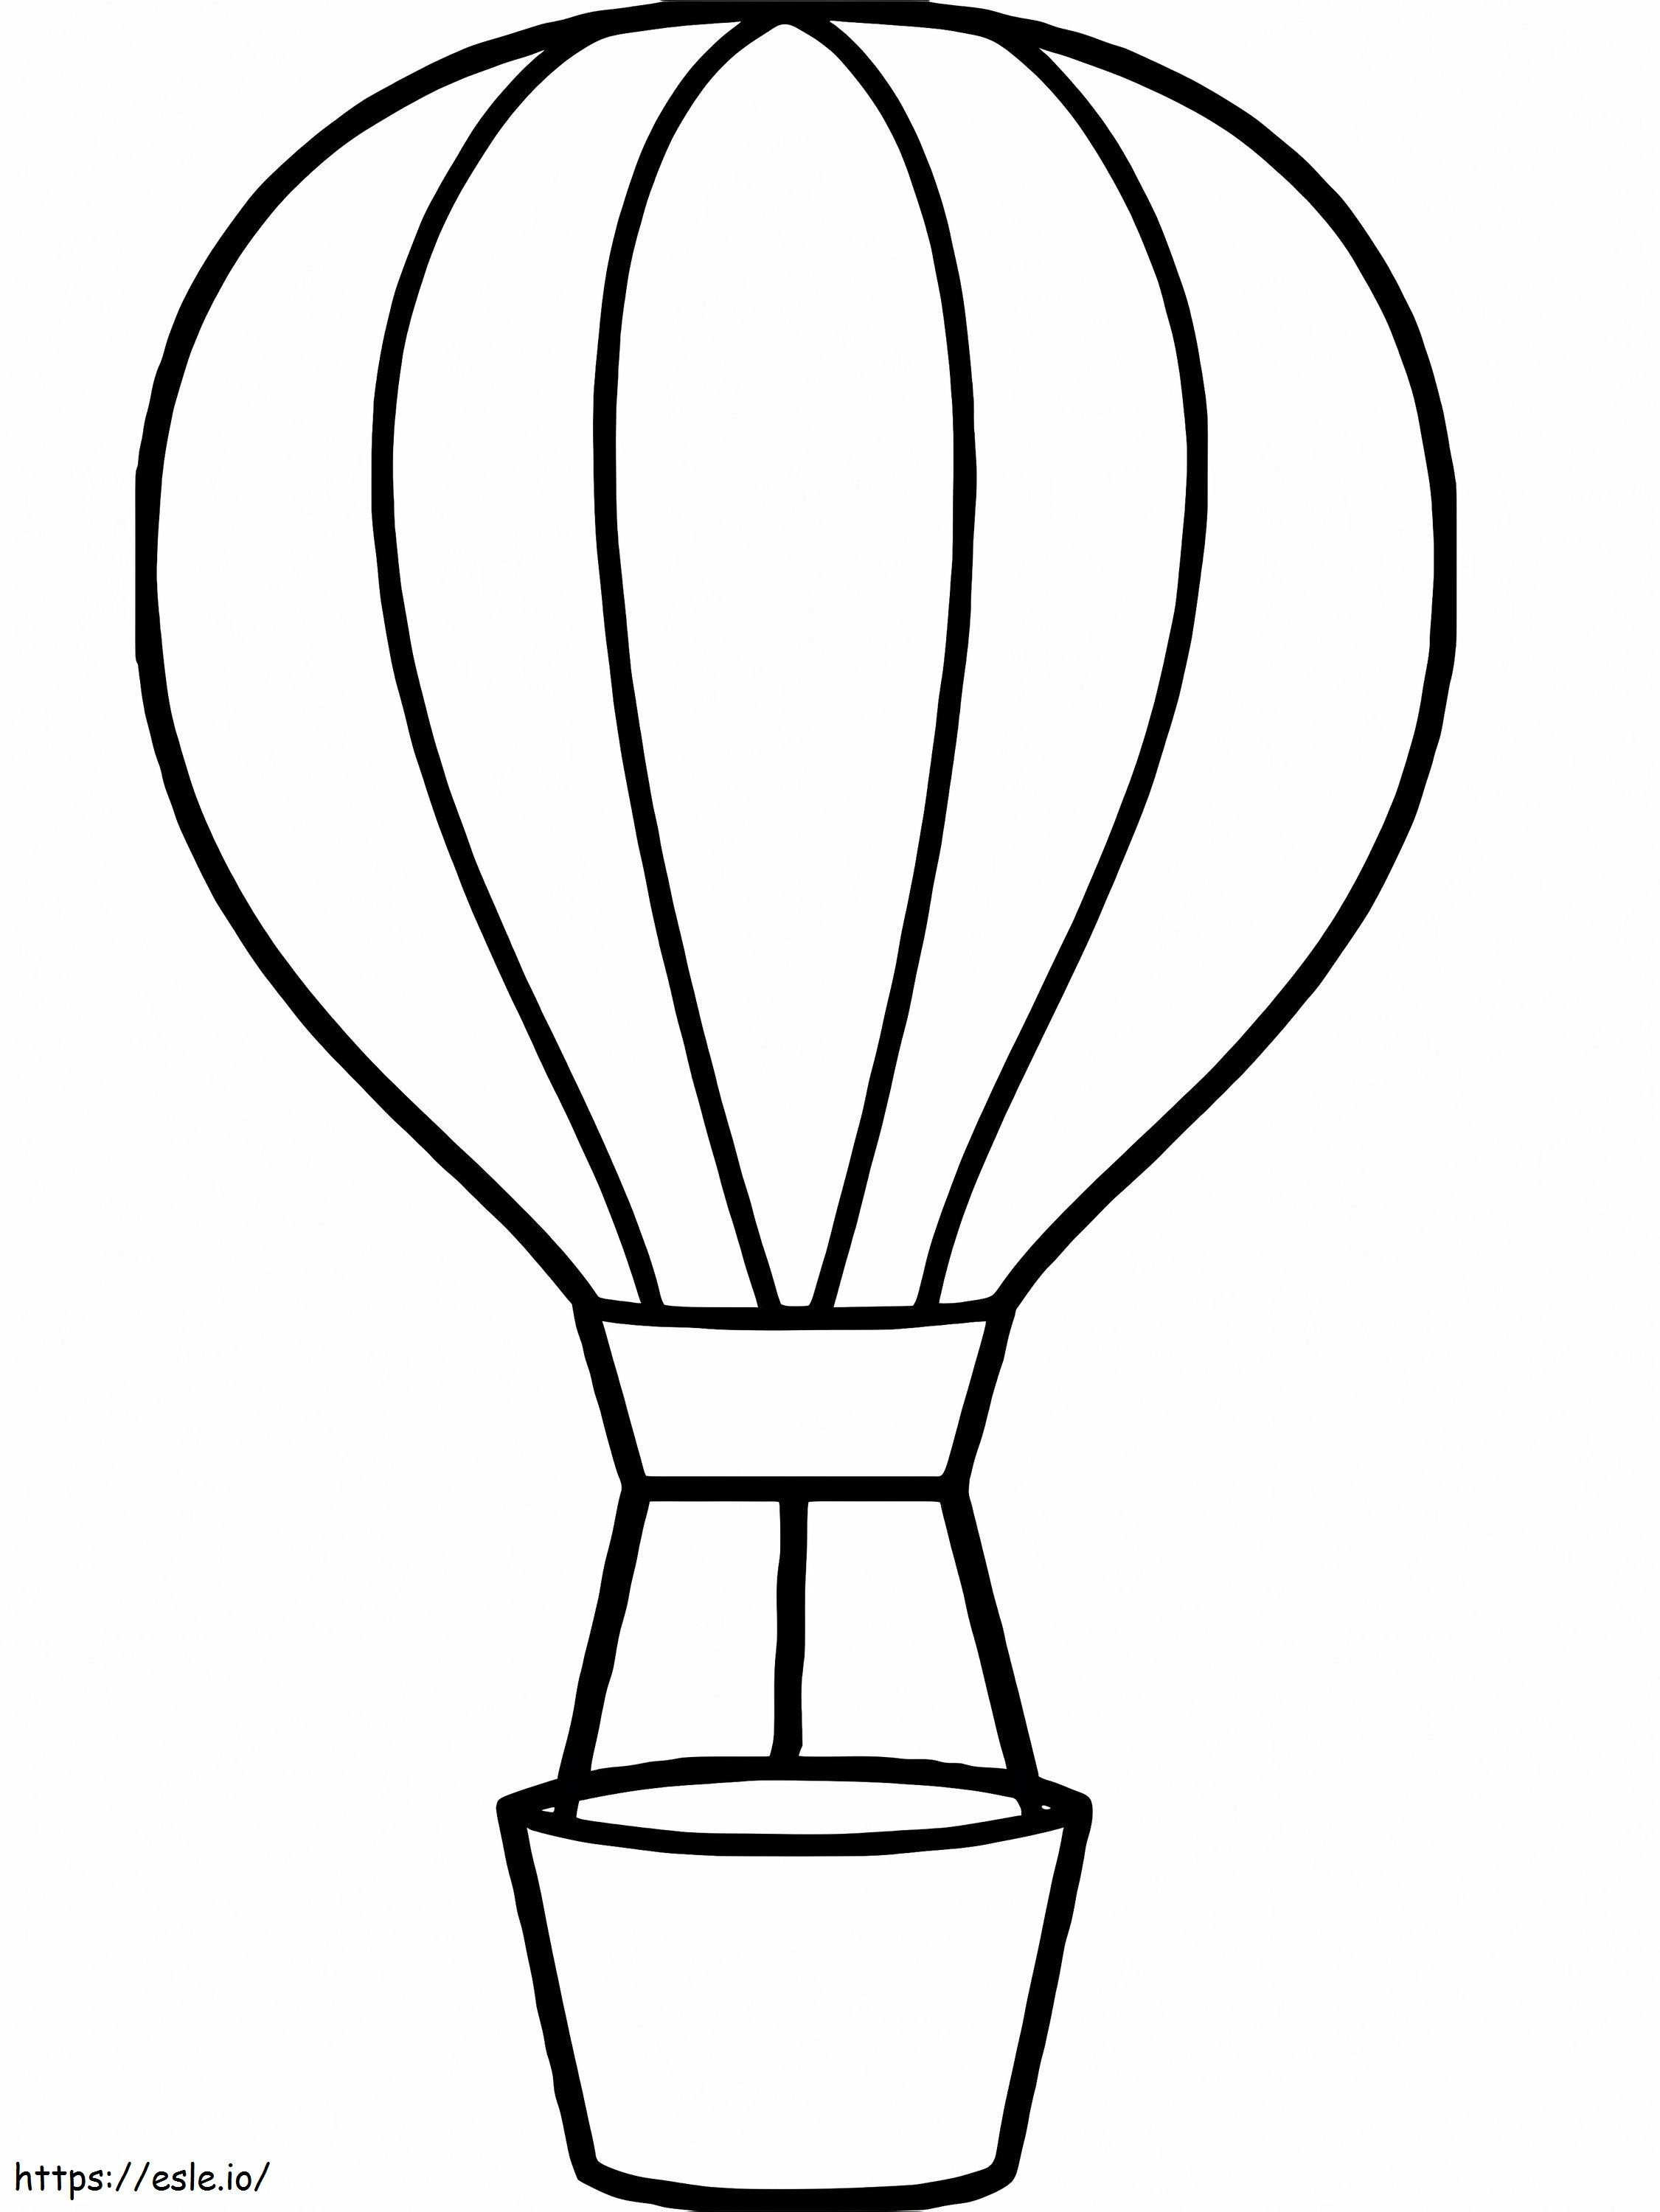 Einzelner Heißluftballon 3 ausmalbilder